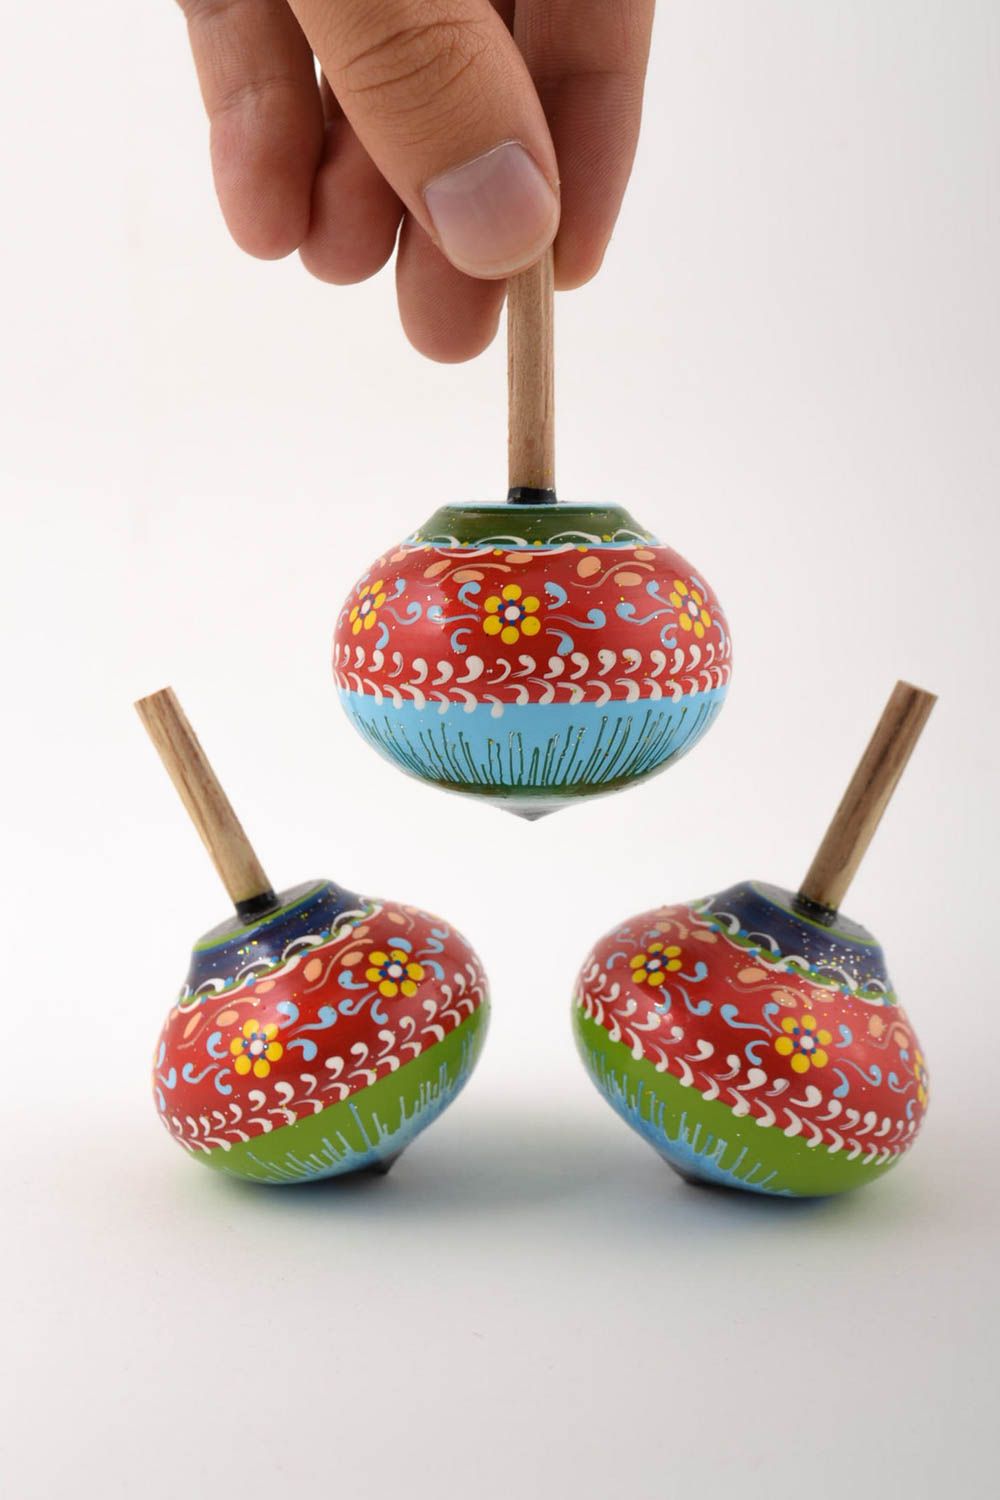 Детские юлы игрушки ручной работы игрушки из натурального материала деревянные фото 5